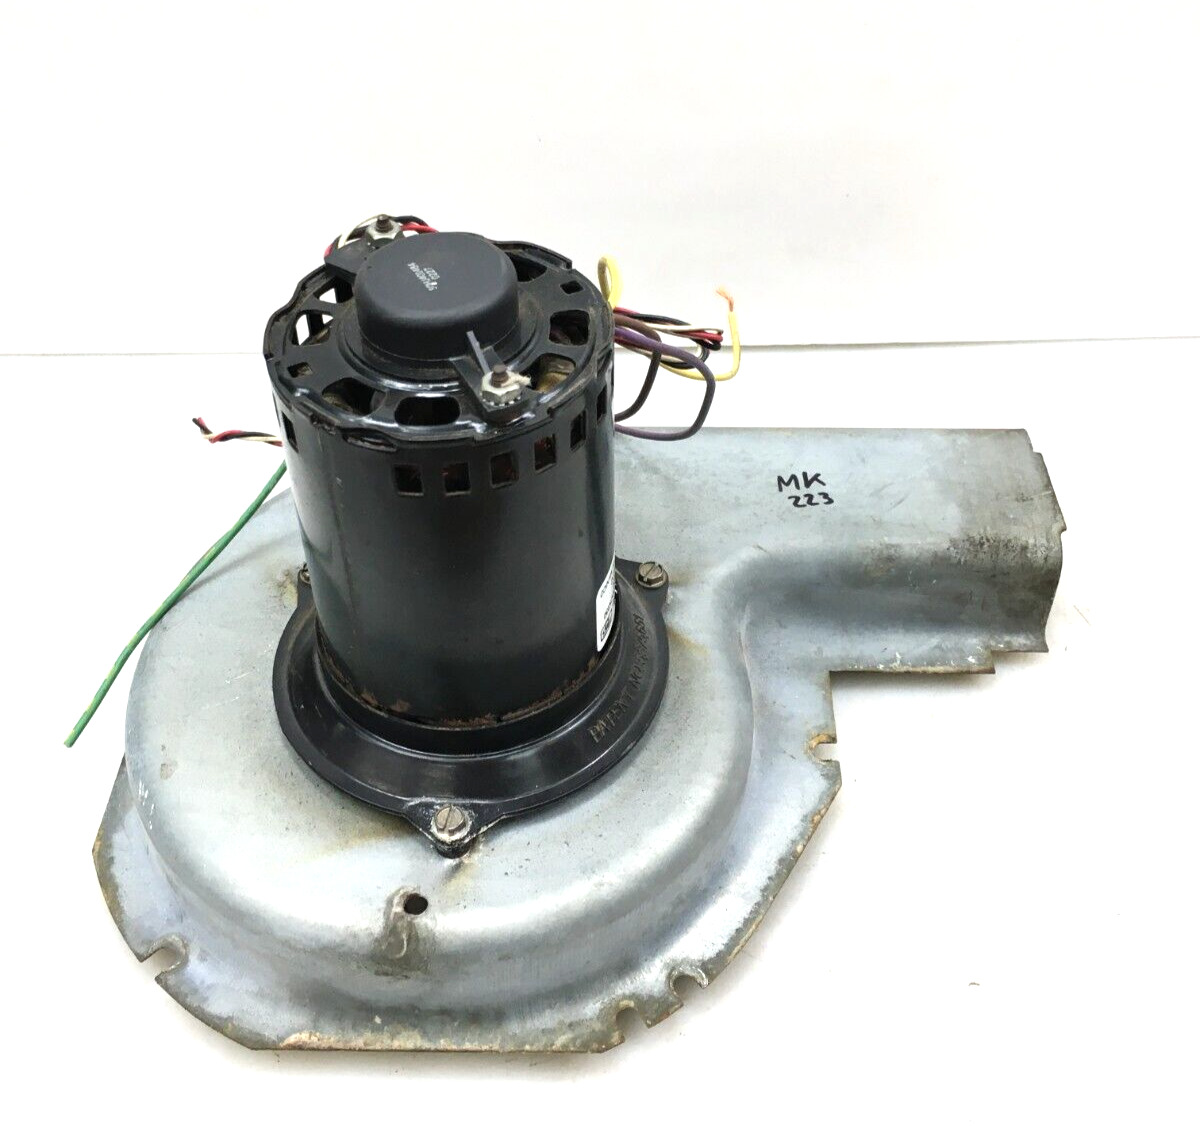 Magnetek JF1H112N Inducer Blower Motor Assembly HC30CK230 208/230V used #MK223